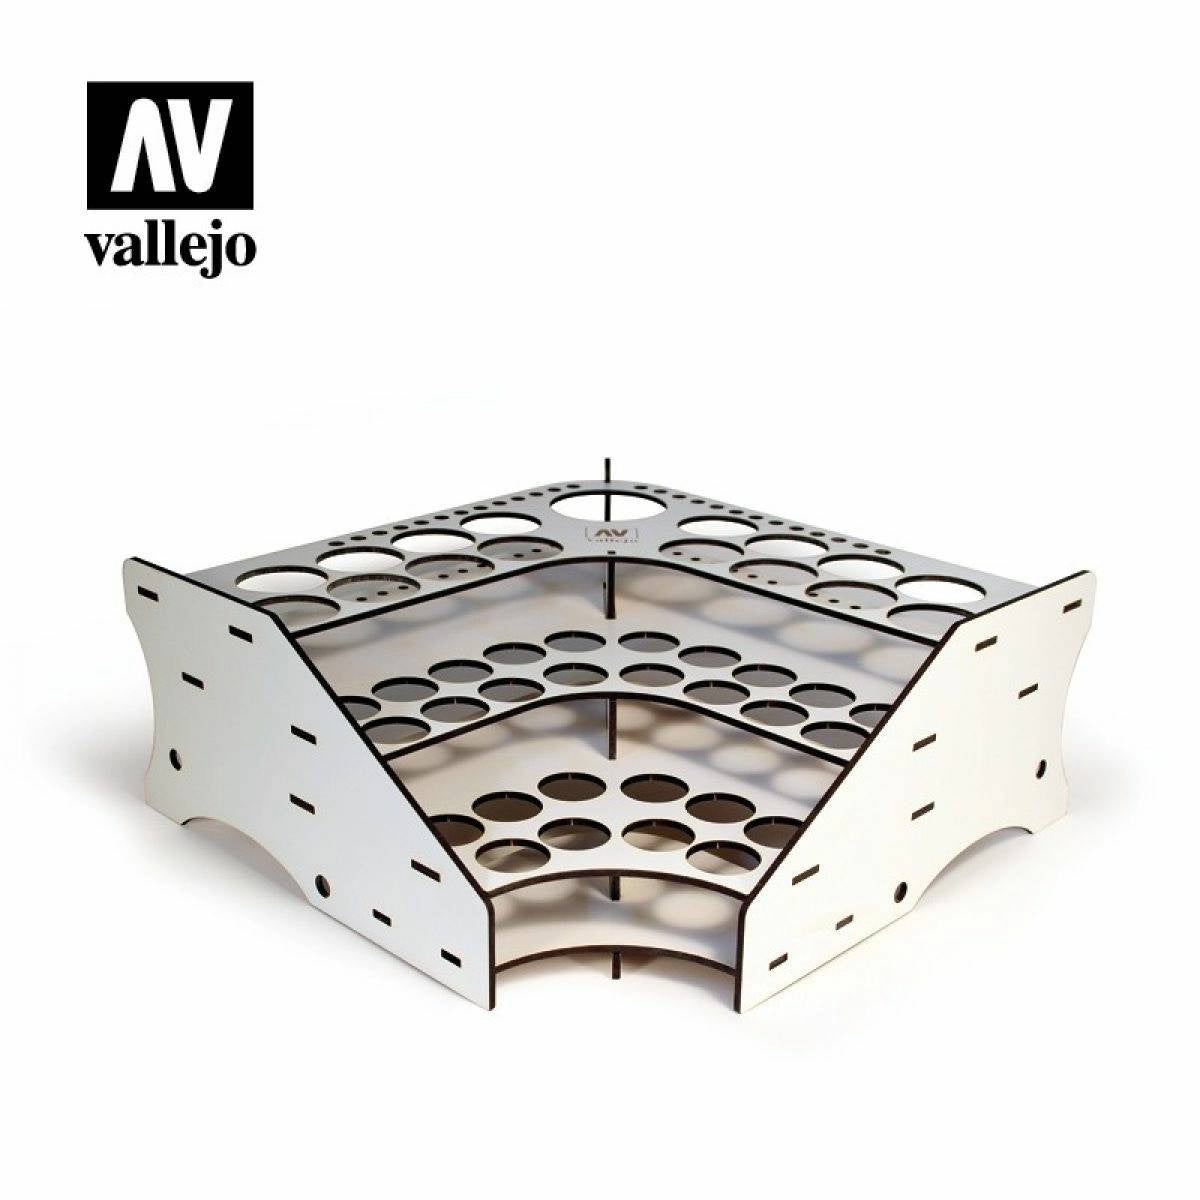 Vallejo Accessories - Wood Stand Corner Front (AV26008)